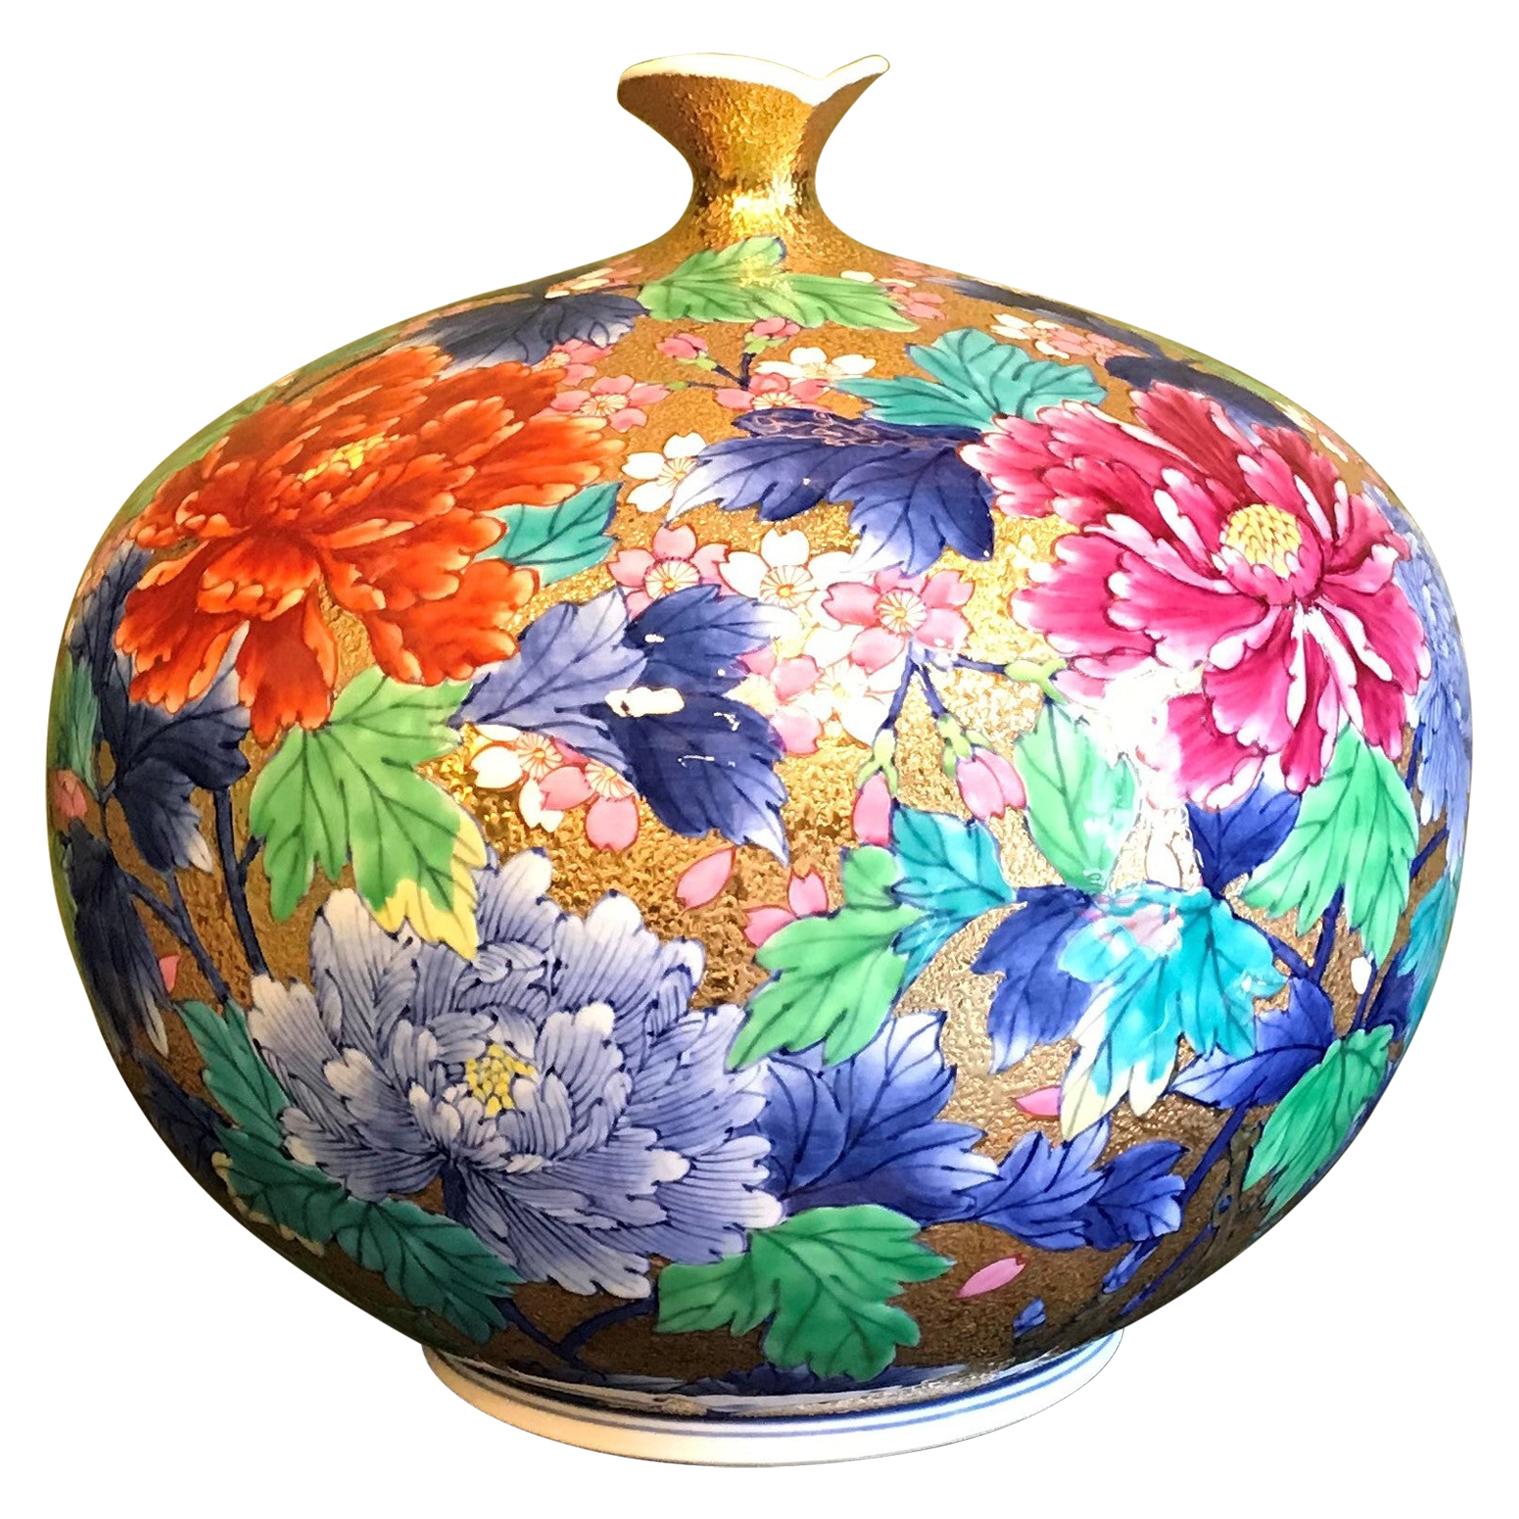 Imari Gilded Blue Red Porcelain Vase by Japanese Master Artist